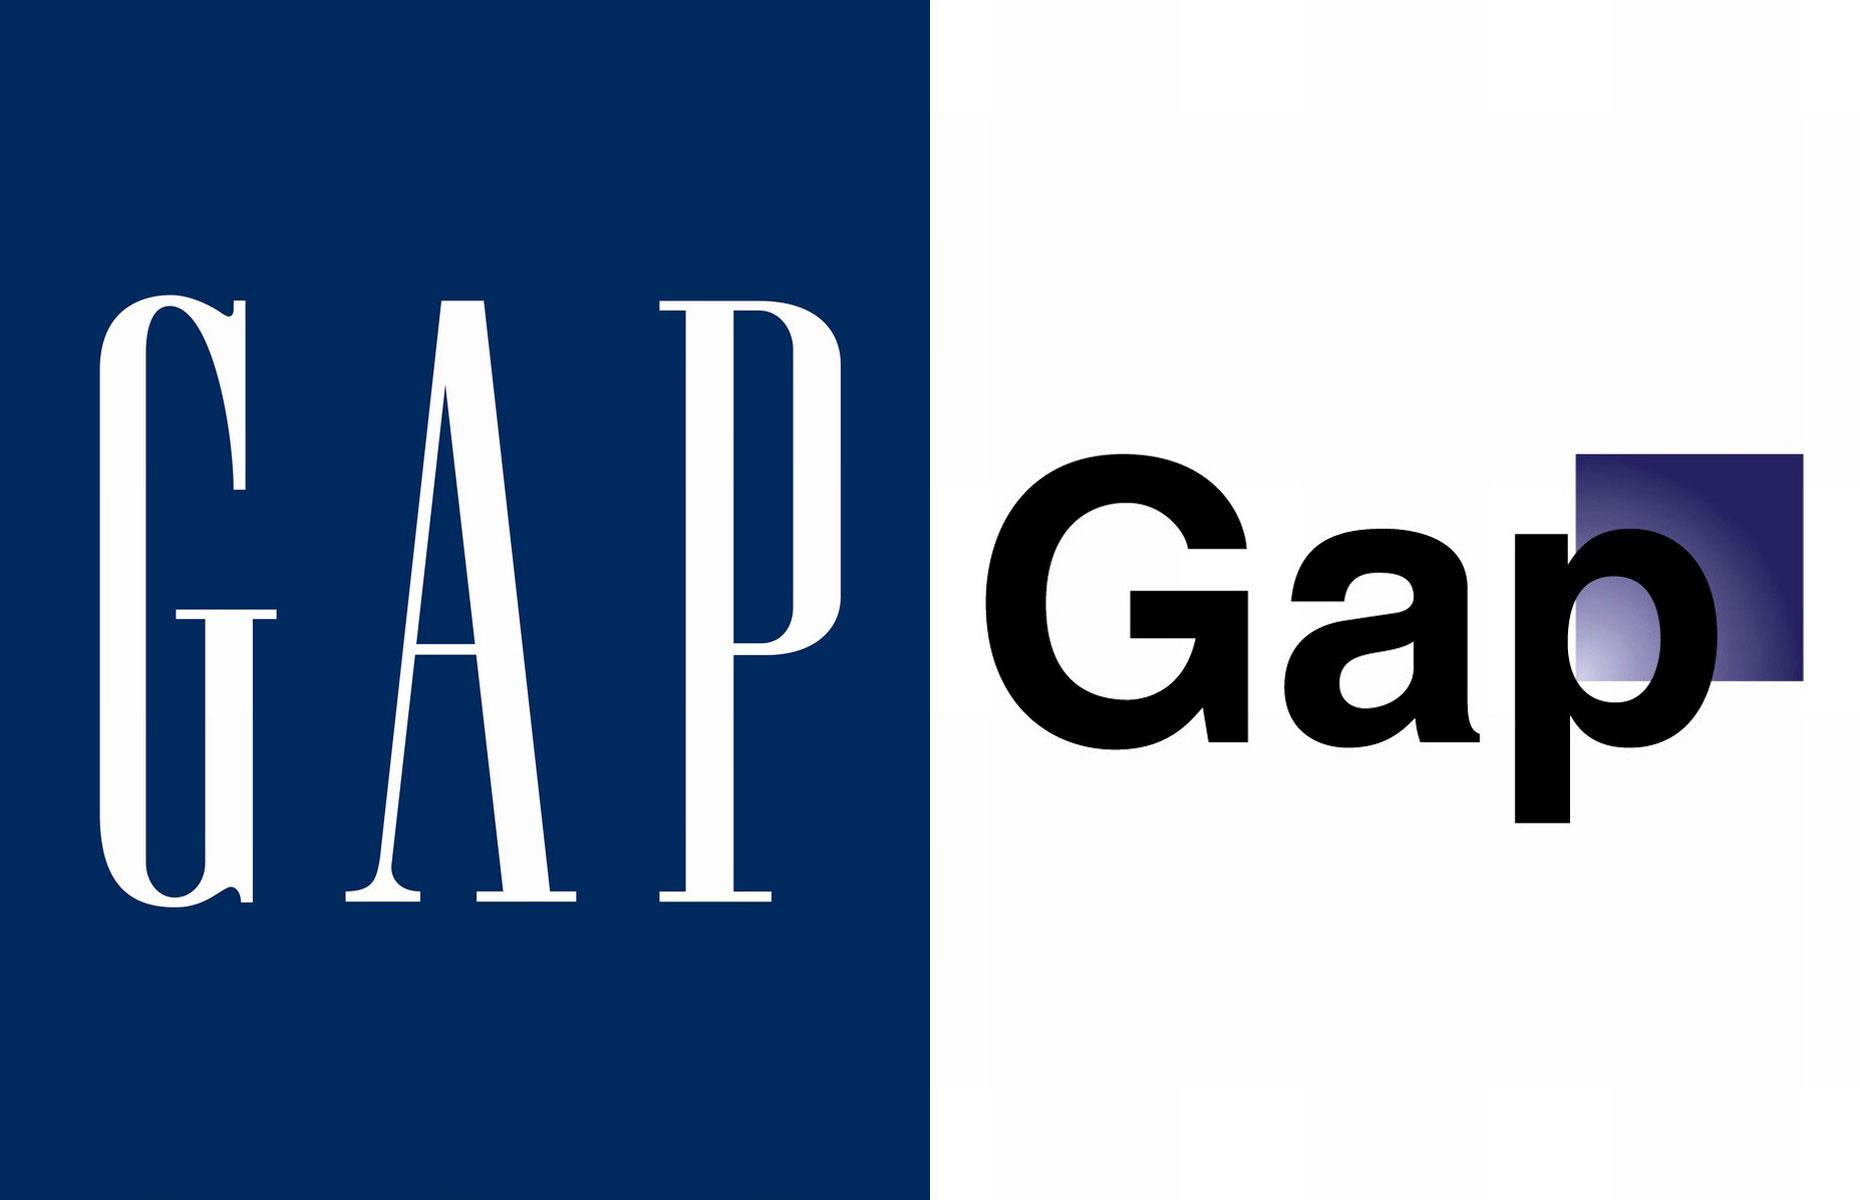 Gap's redesigned logo fiasco